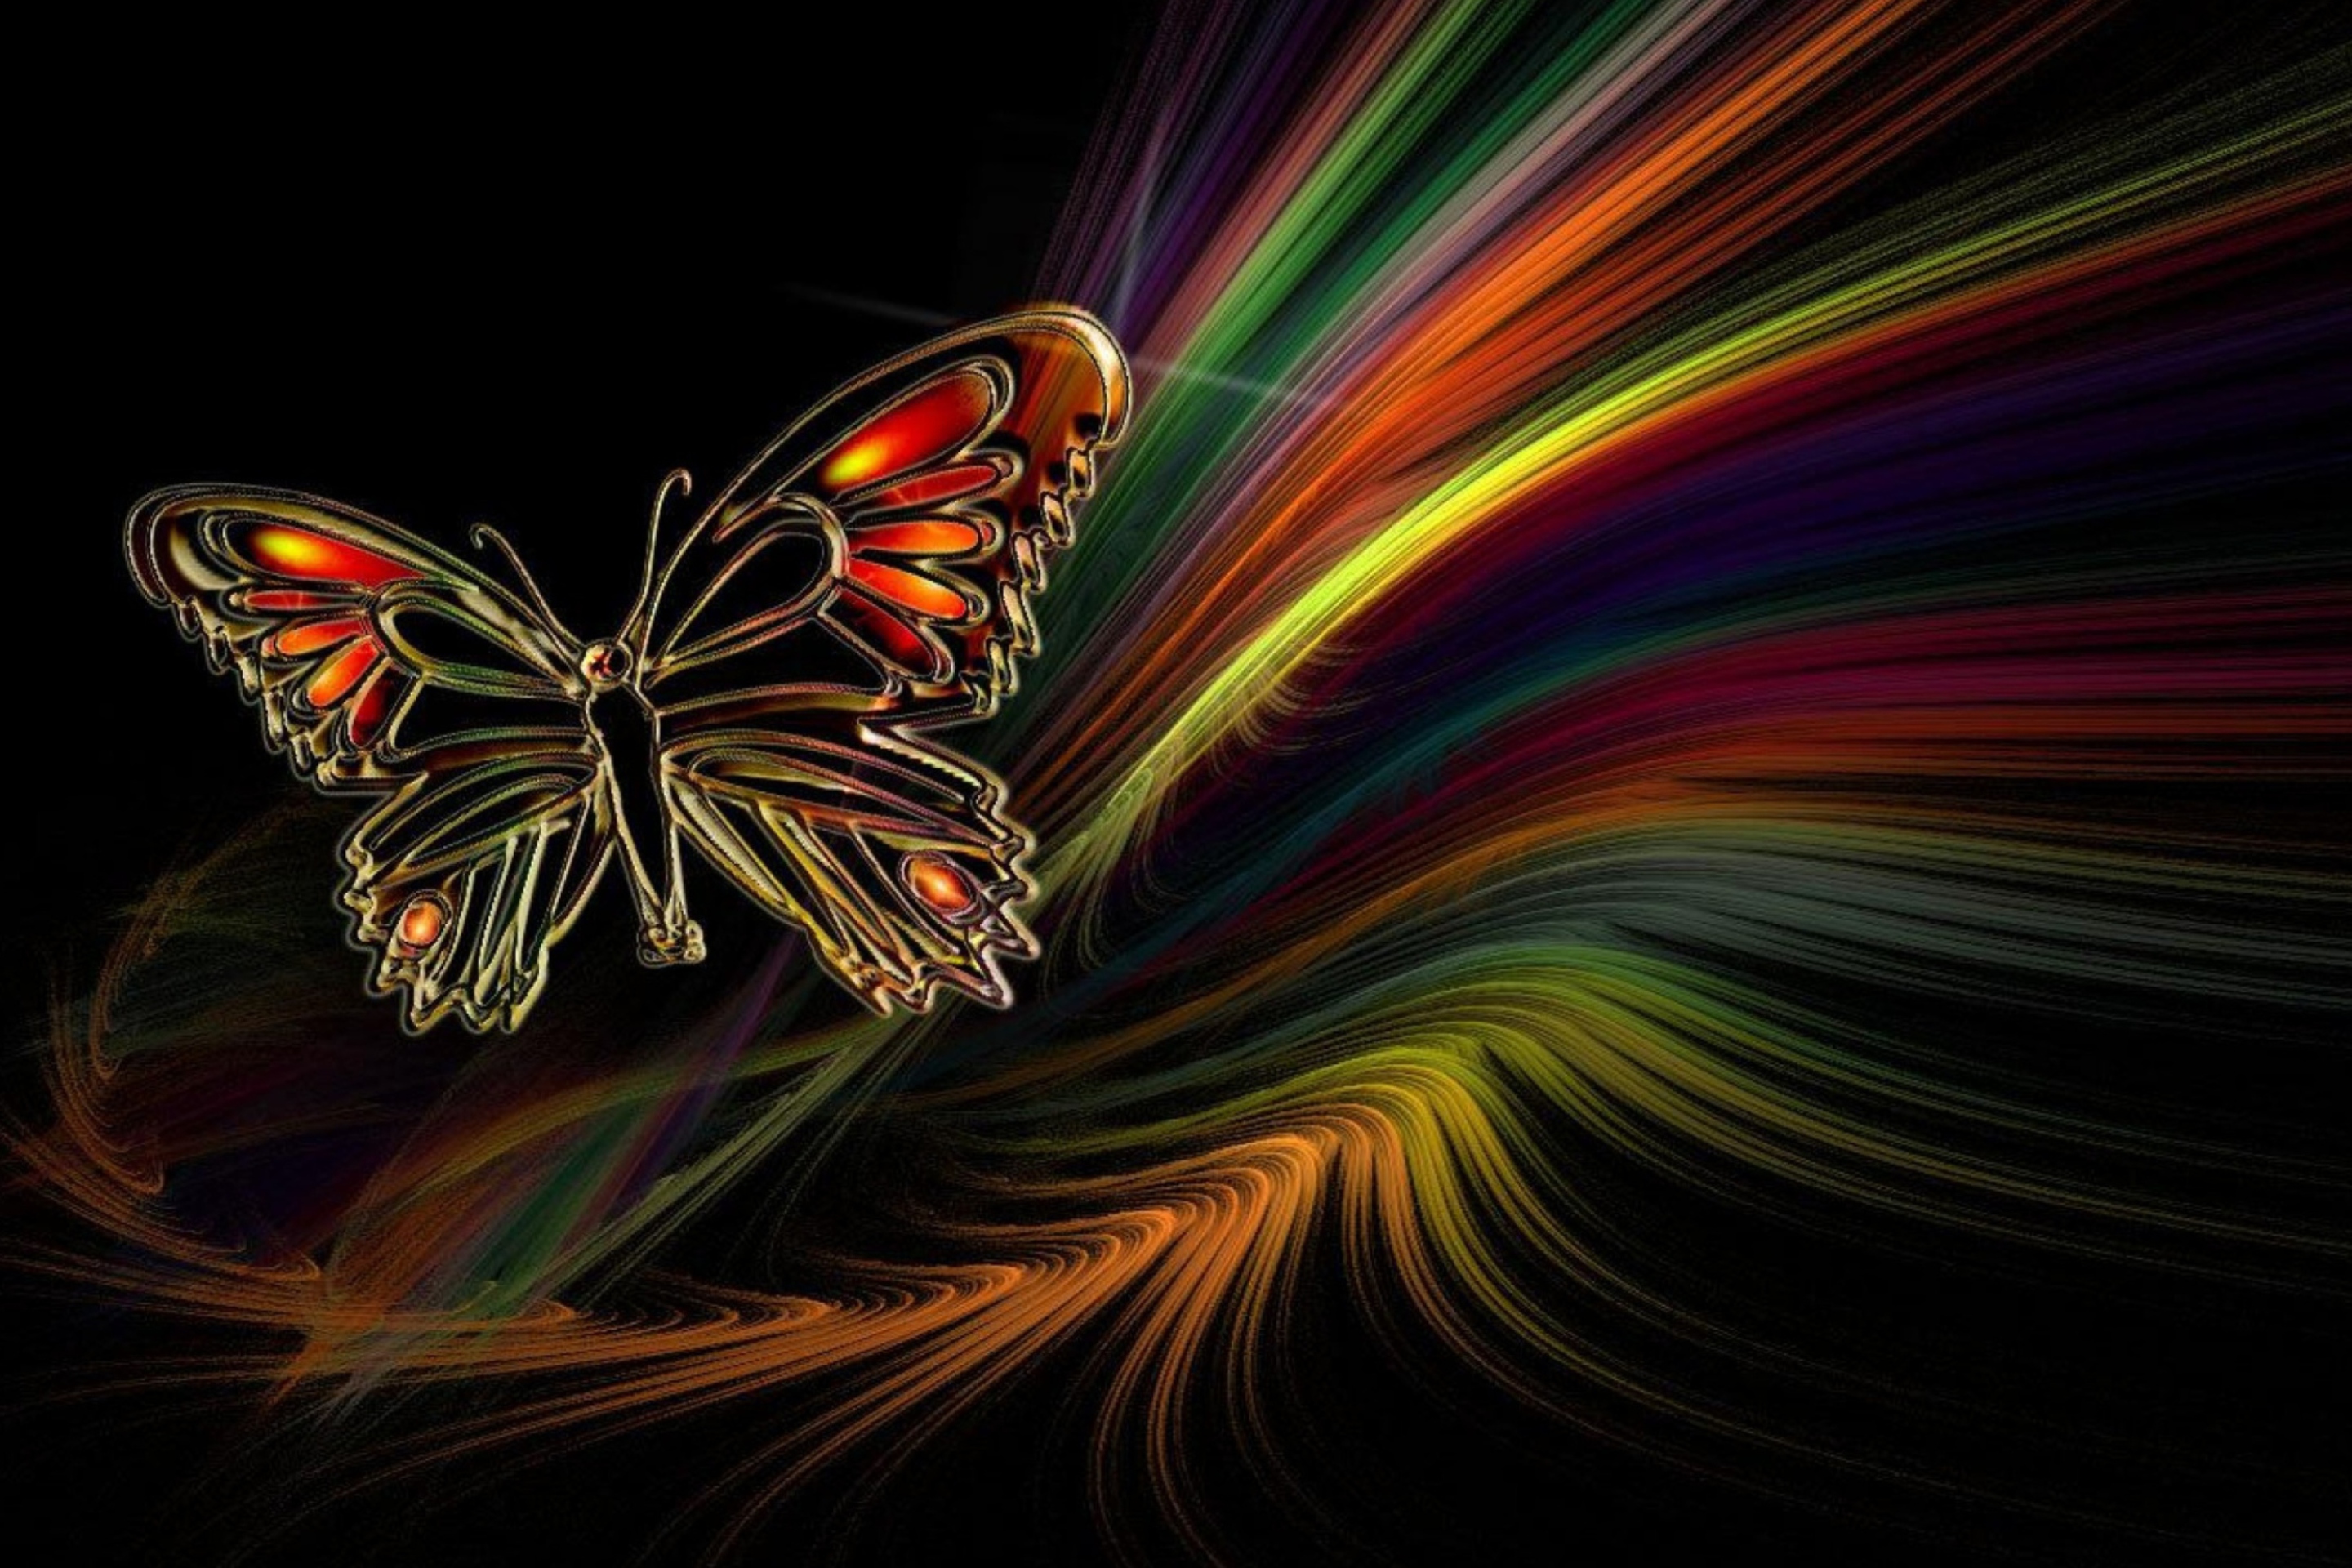 Заставки на телефон 1. Красивый фон на телефон. Бабочка абстракция. Заставка бабочки. Яркие обои.